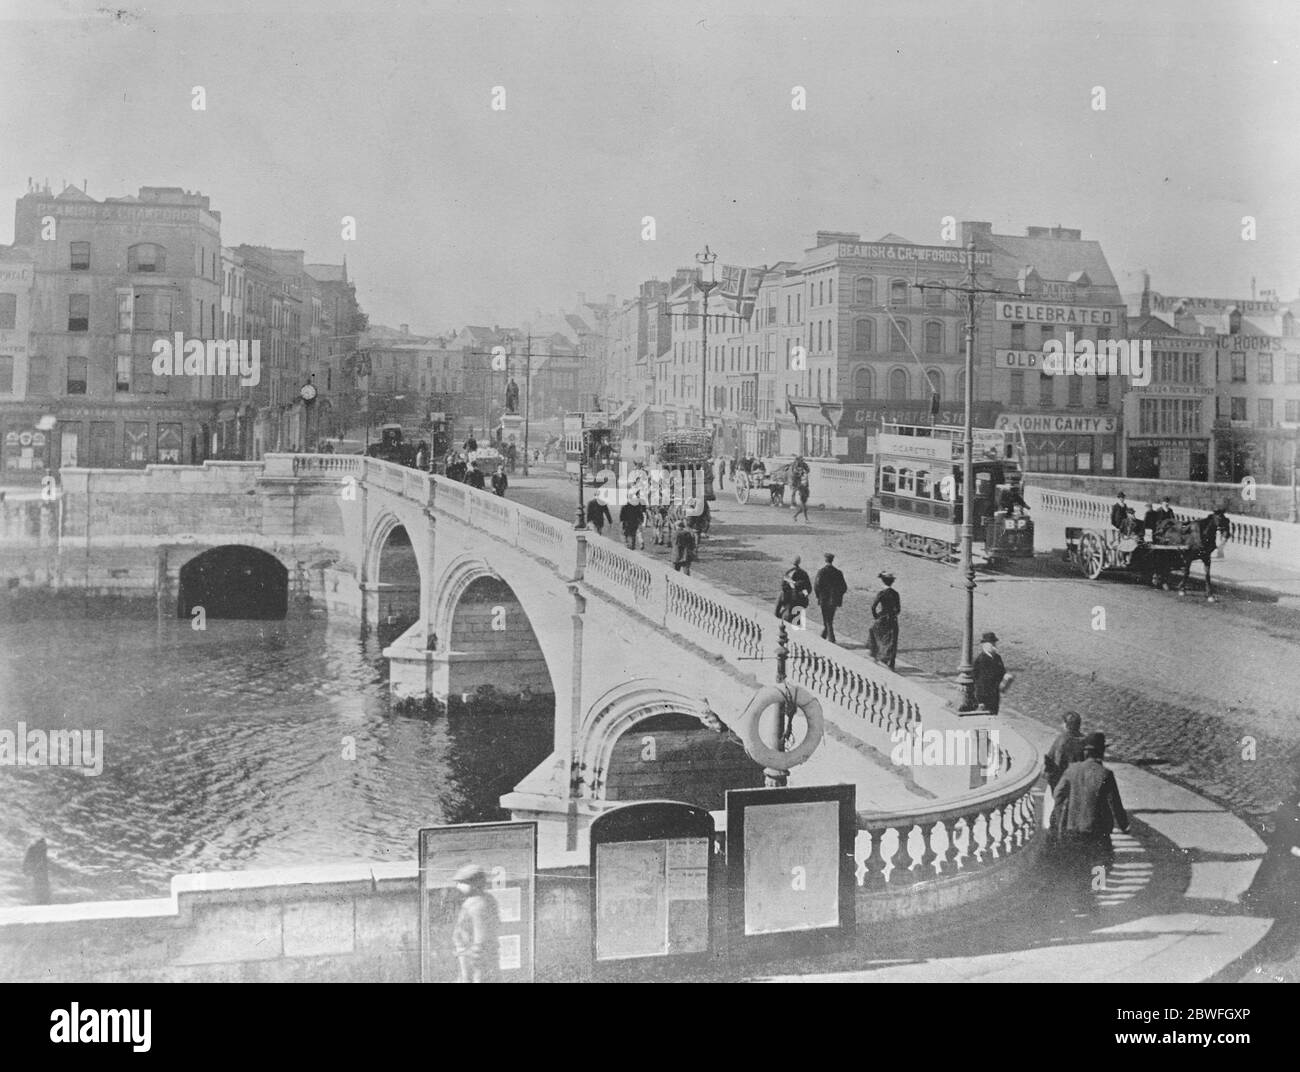 Die verbrannte Stadt Cork während des irischen Unabhängigkeitskrieges. Nach einem Hinterhalt einer britischen Hilfspatrouille in der Stadt durch die irische Republikanische Armee haben Hilfskräfte, Schwarze und Tans und britische Soldaten eine Reihe von Häusern in Brand gesteckt und dann zahlreiche Gebäude im Stadtzentrum geplündert und verbrannt. Hier wurde die St. Patrick 's Brücke im Dezember 14 1920 niedergebrannt Stockfoto